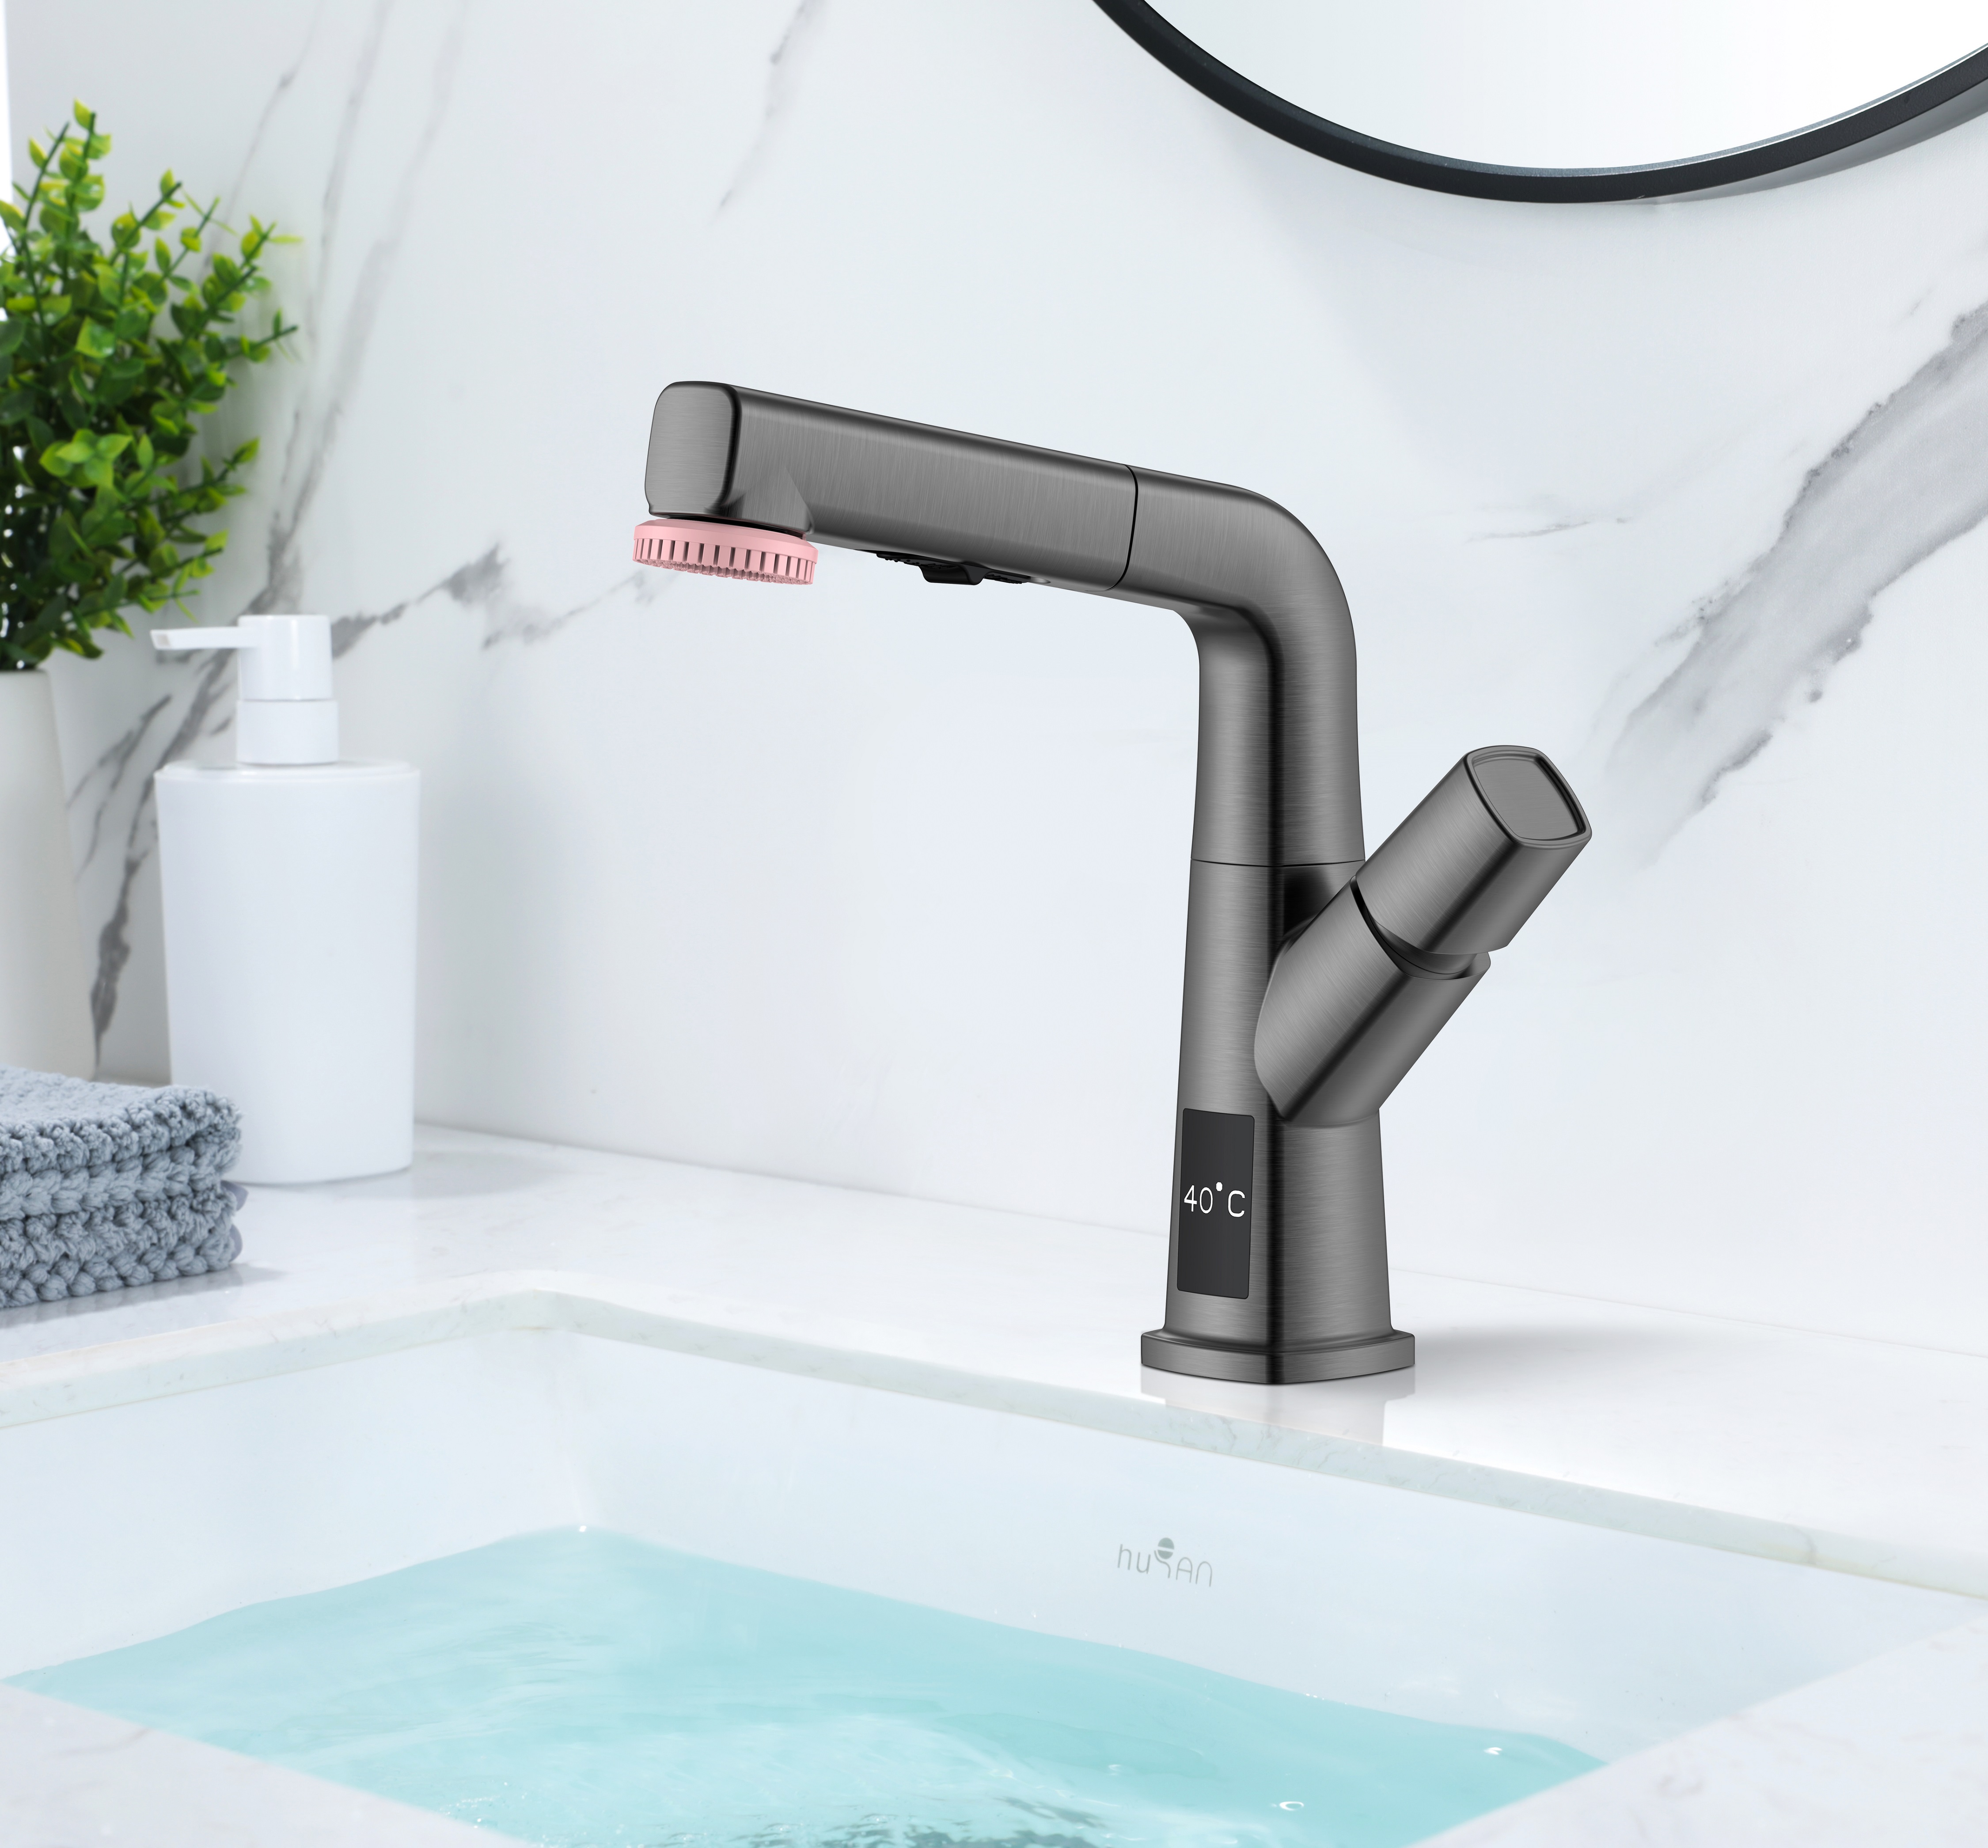 Schwarzer Edelstahl-Badezimmerhahn mit Temperaturanzeige, ausziehbarer Waschtischhahn